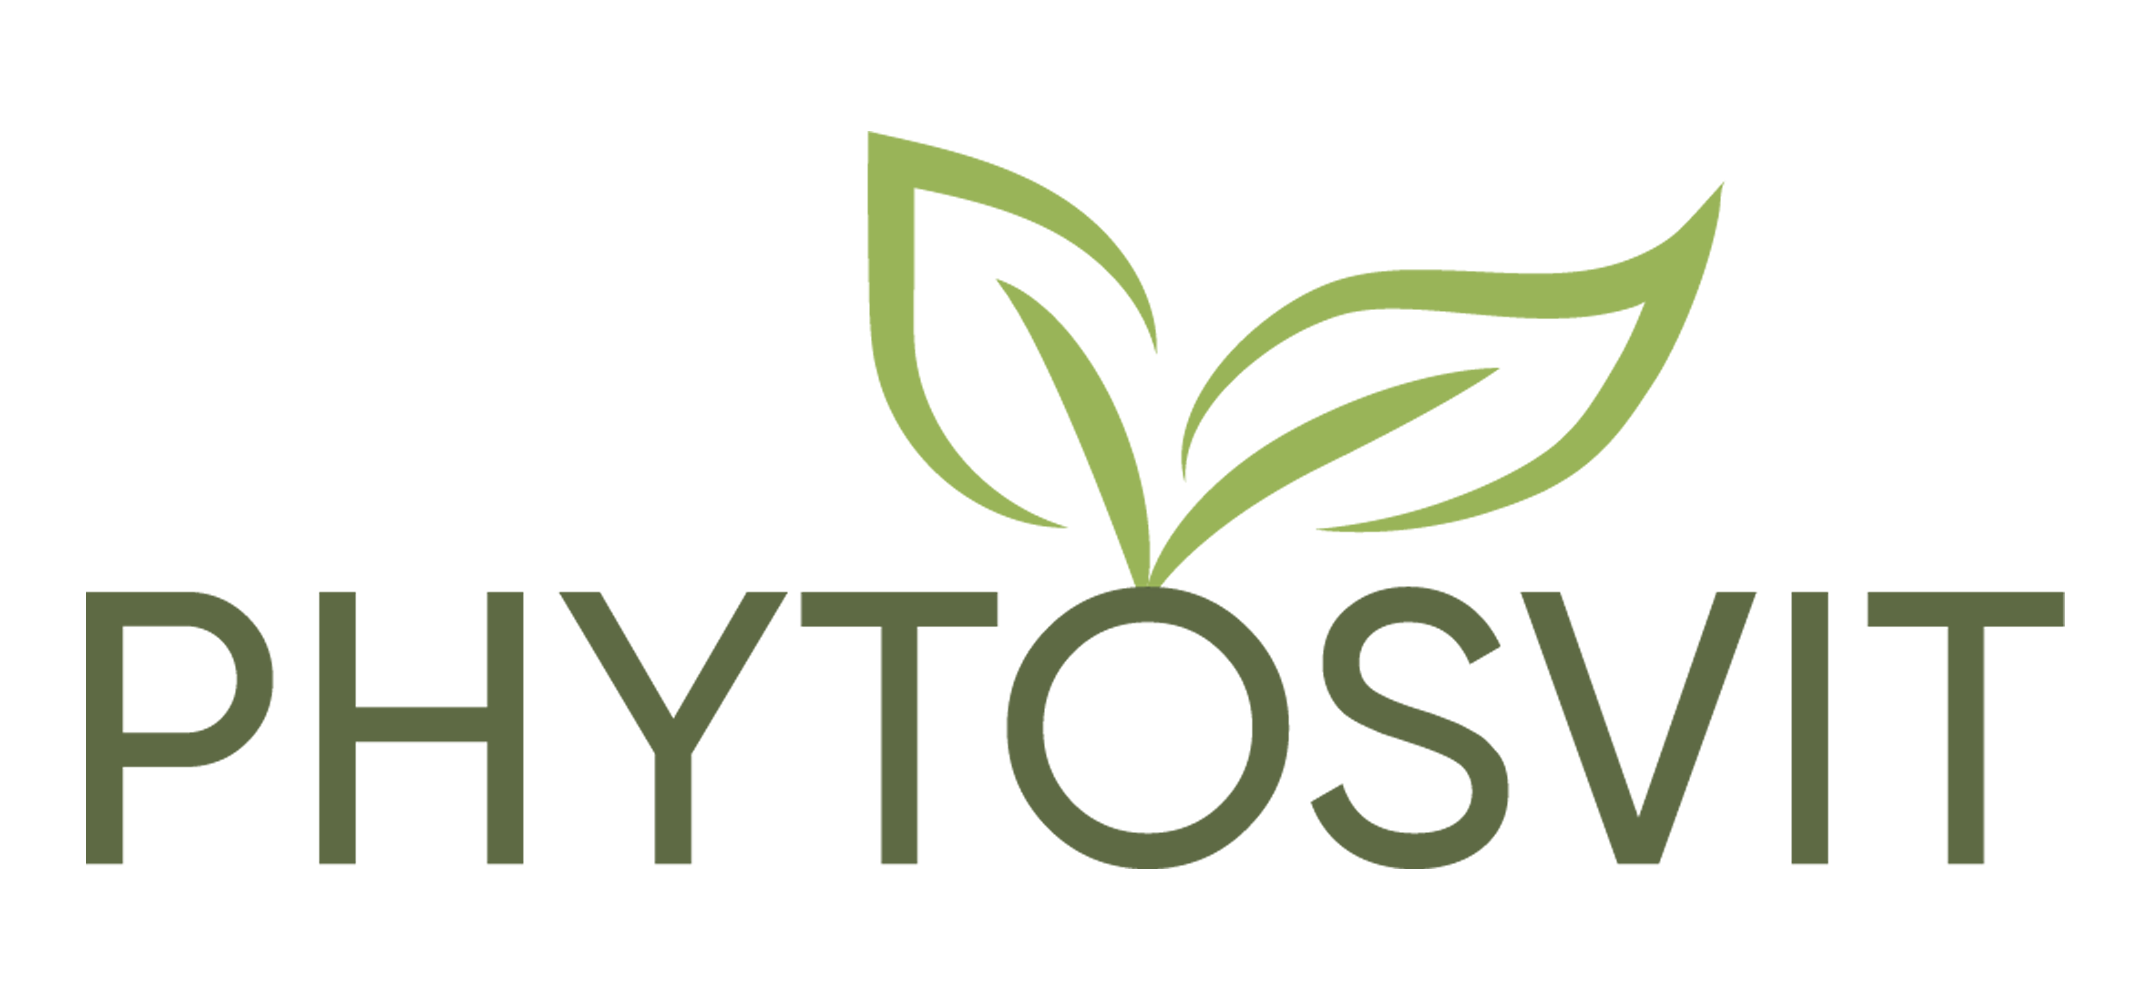 Phytosvit